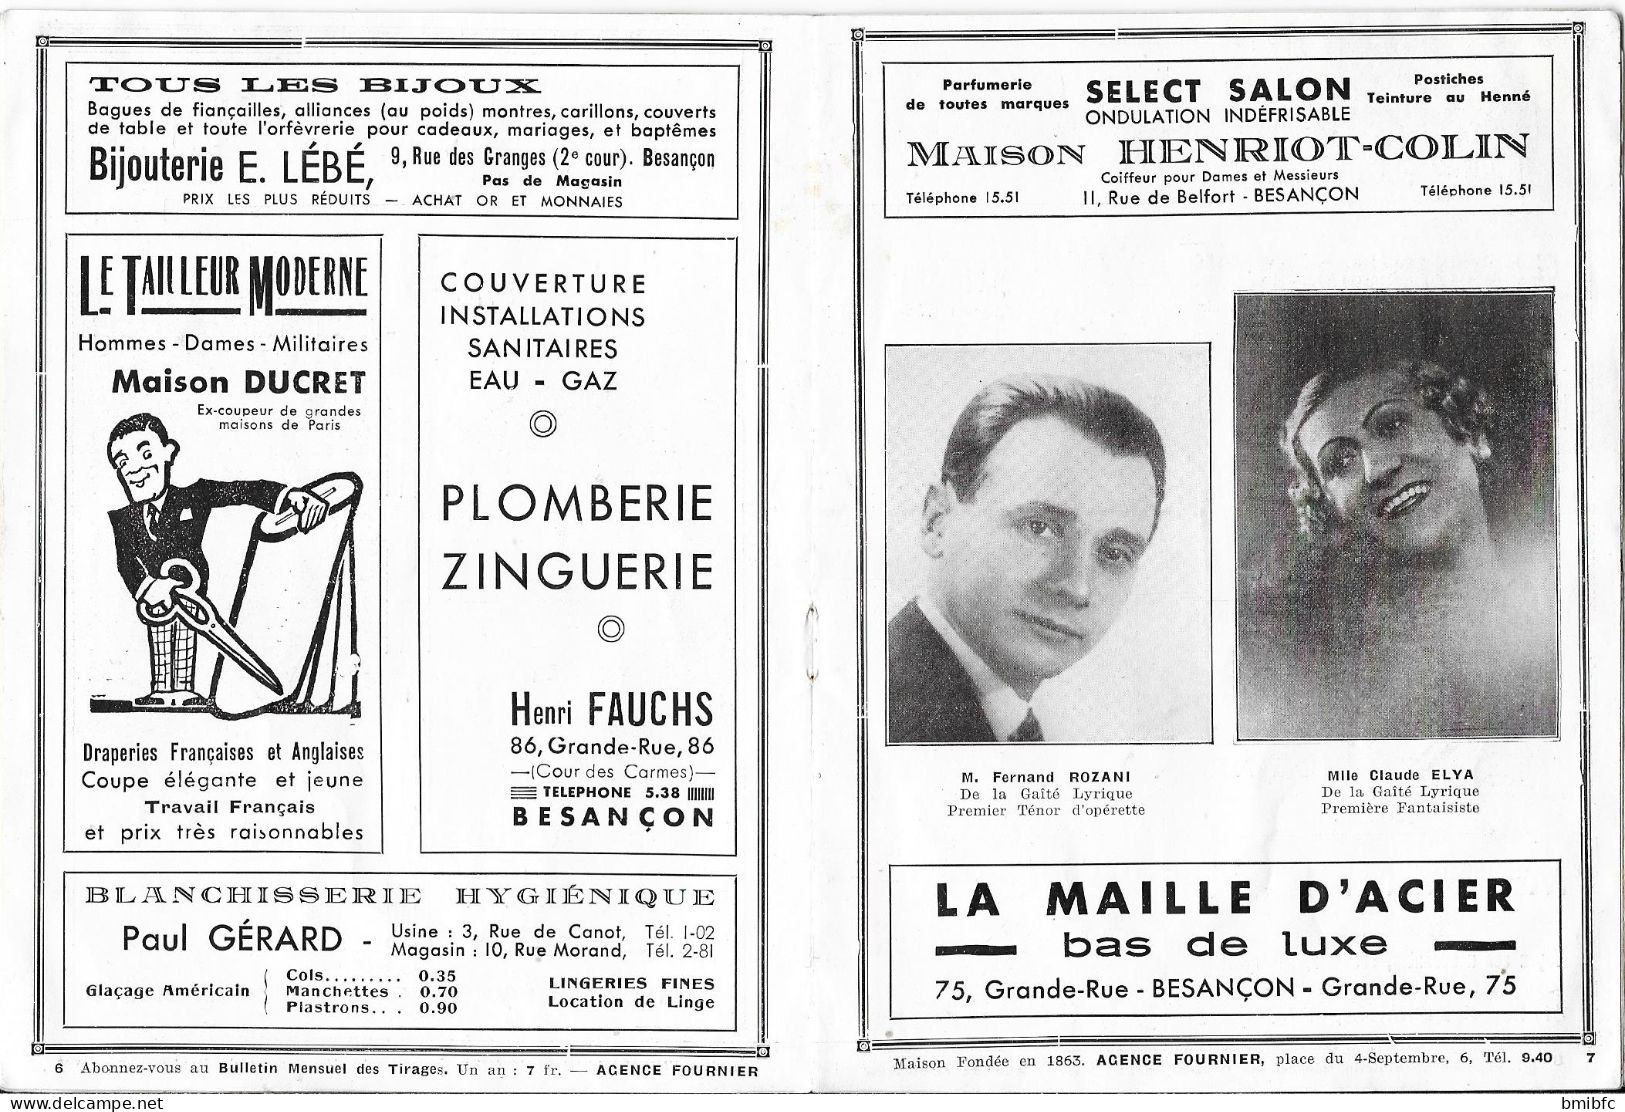 Saison 1935-1936 - Théâtre Municipal de BESANÇON - Programme - Prix 1 Fr. 50  - (Nombreuses publicités Commerciales)